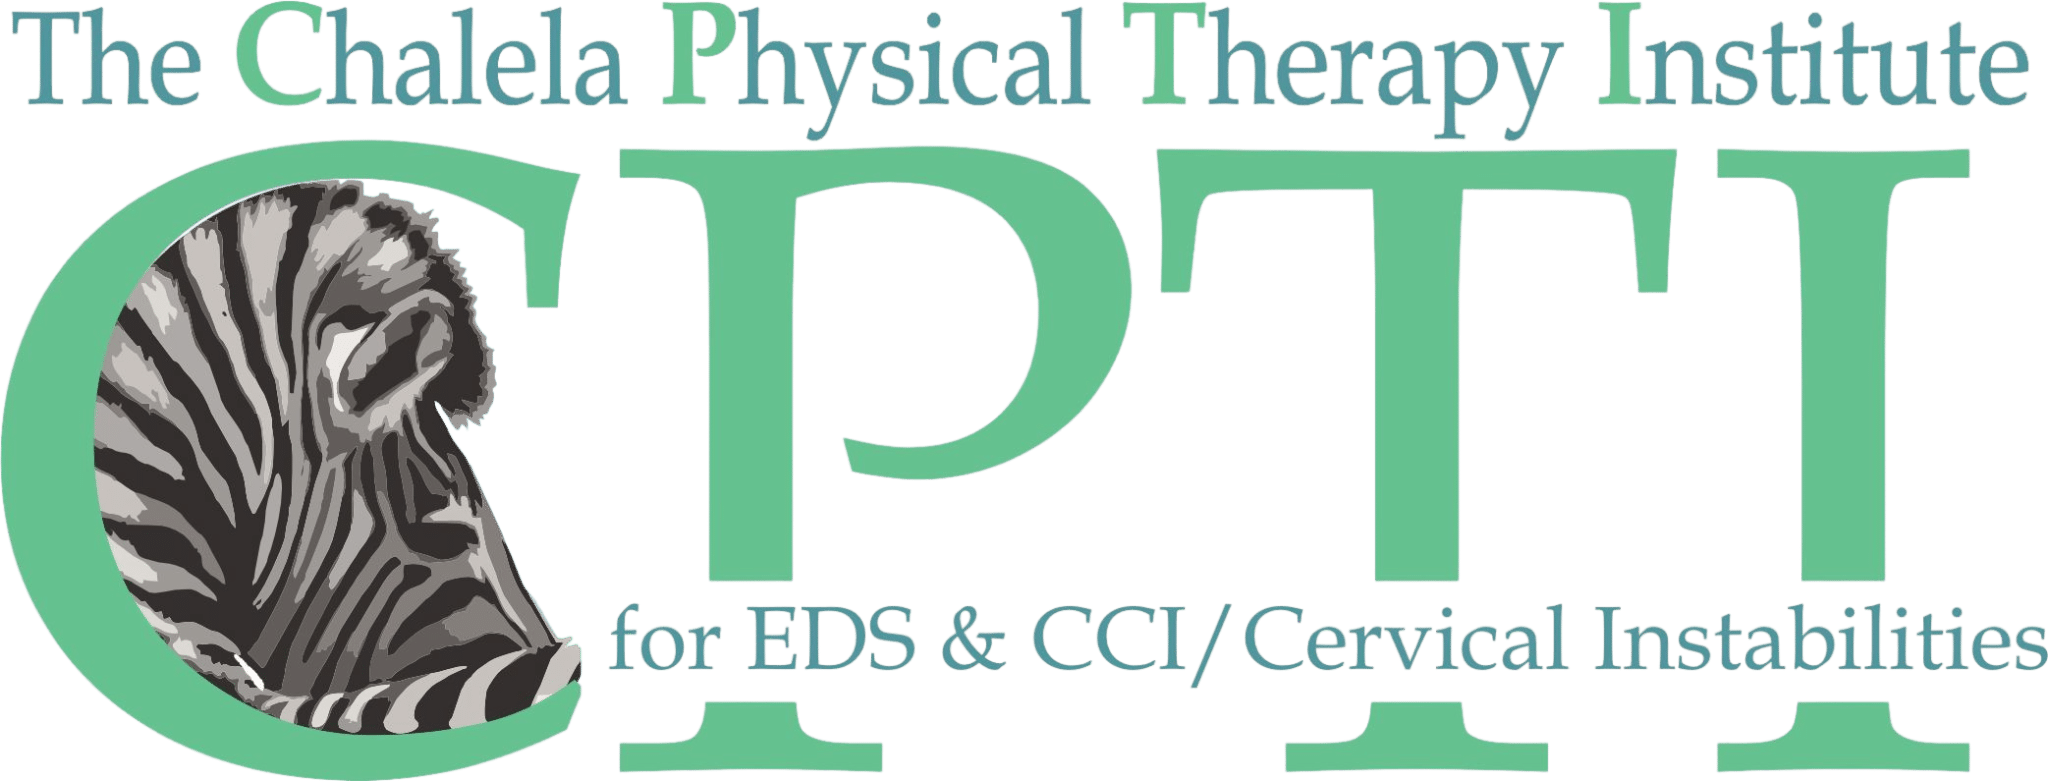 CPTI-Logo-Removed